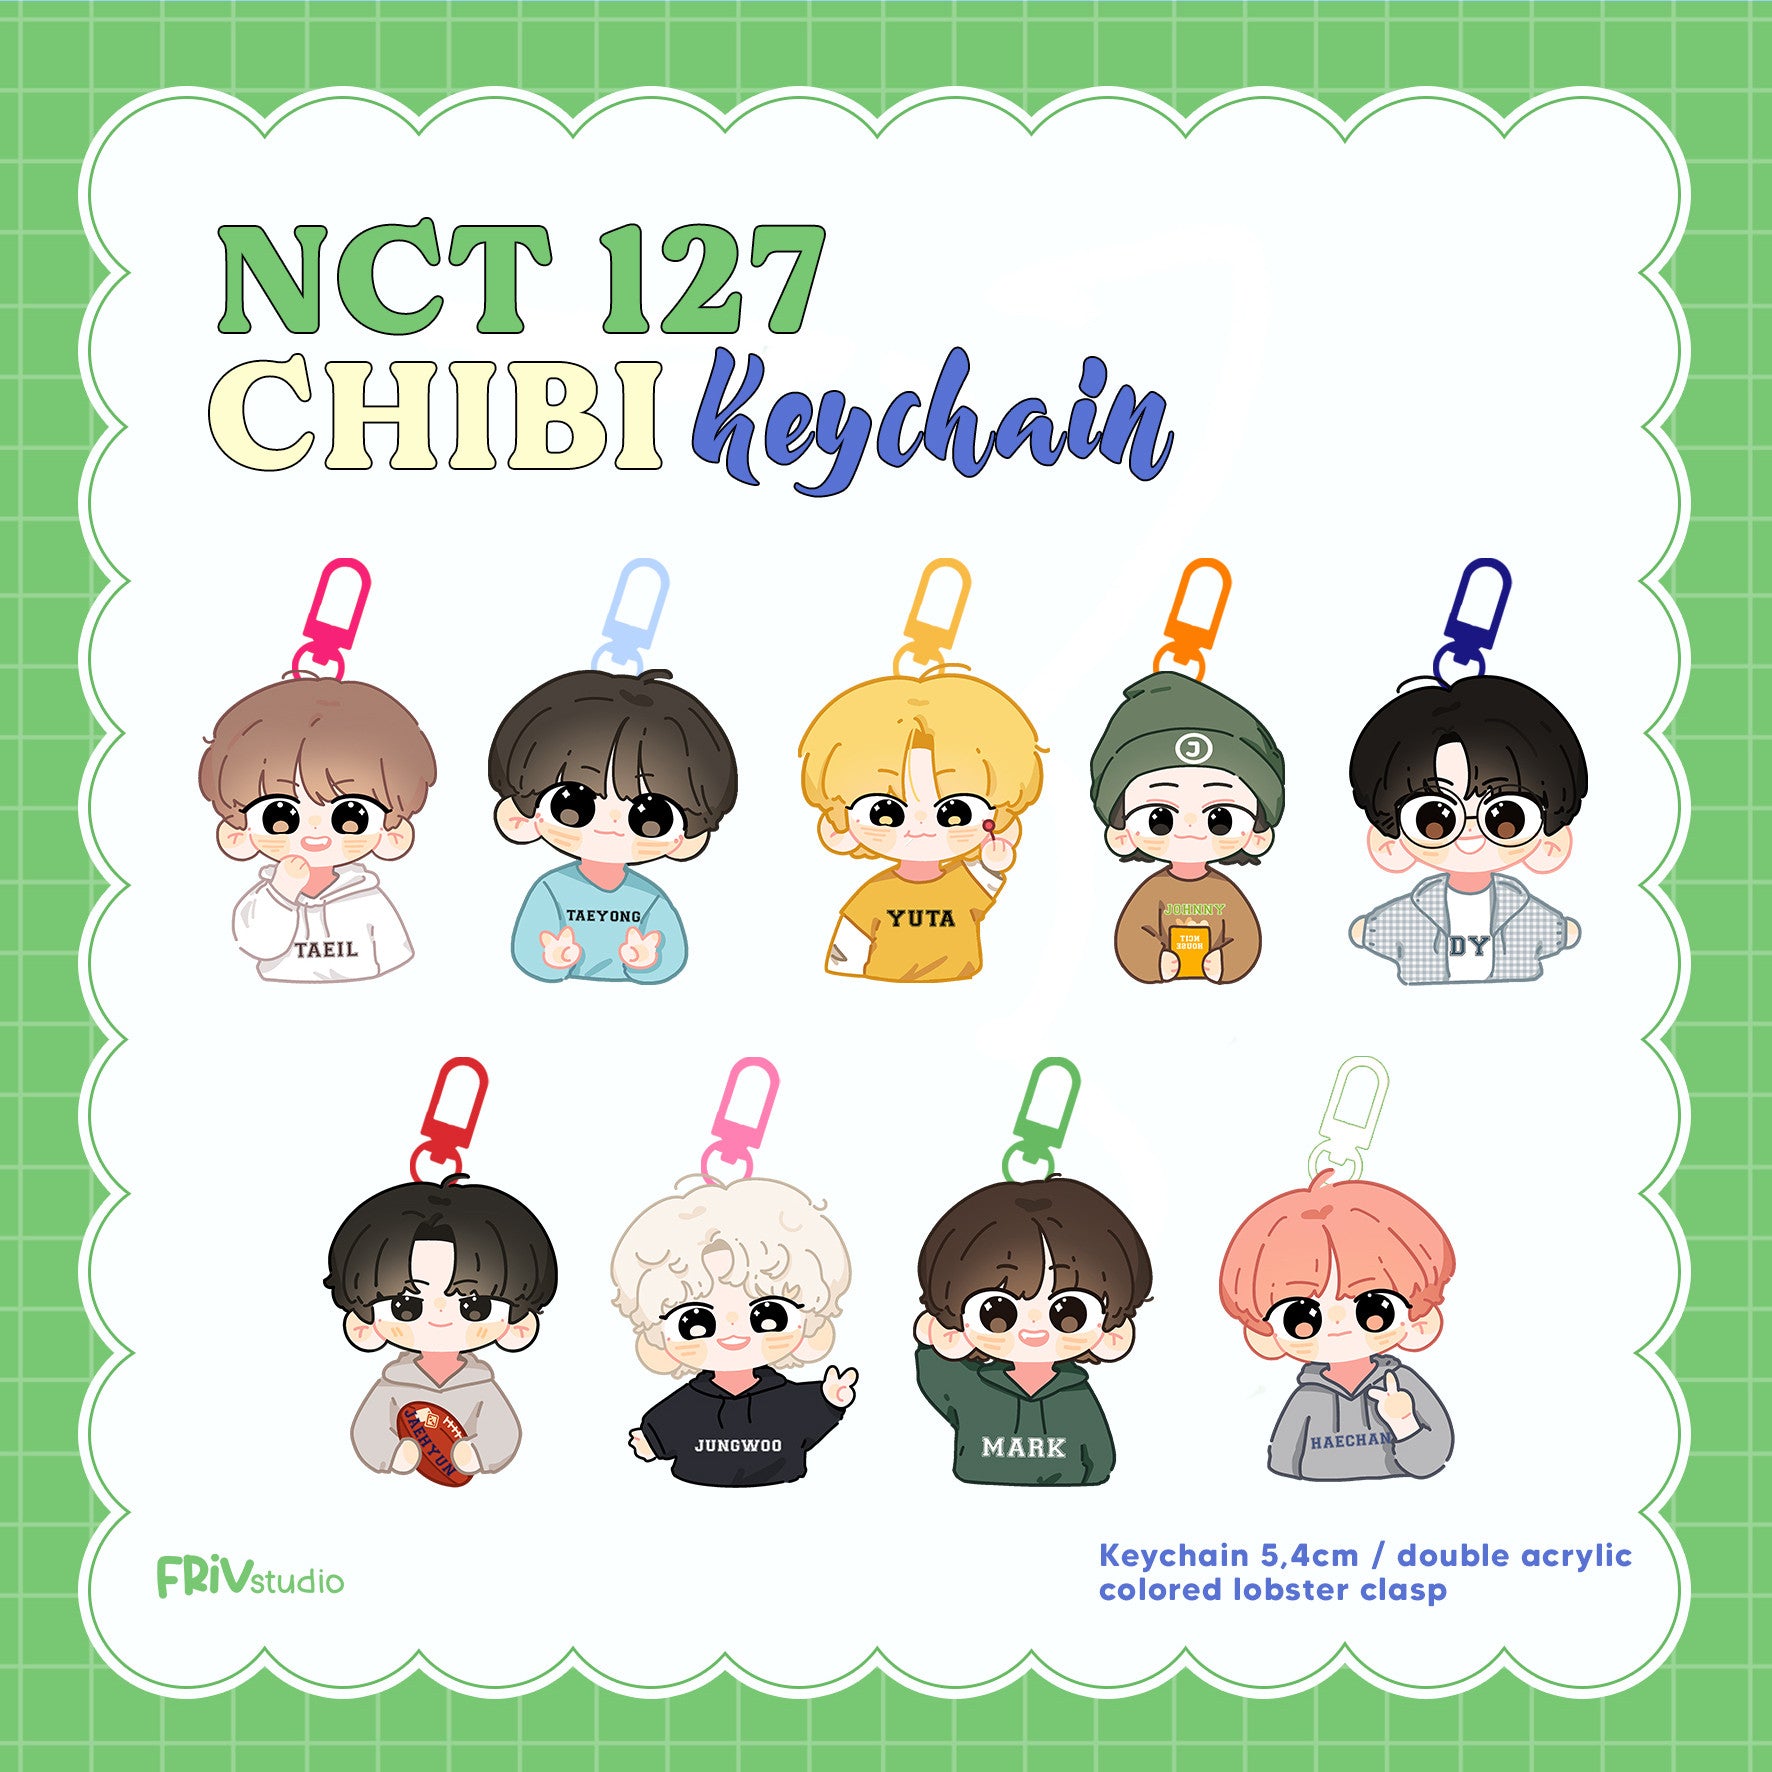 NCT 127 CHIBI KEYCHAIN